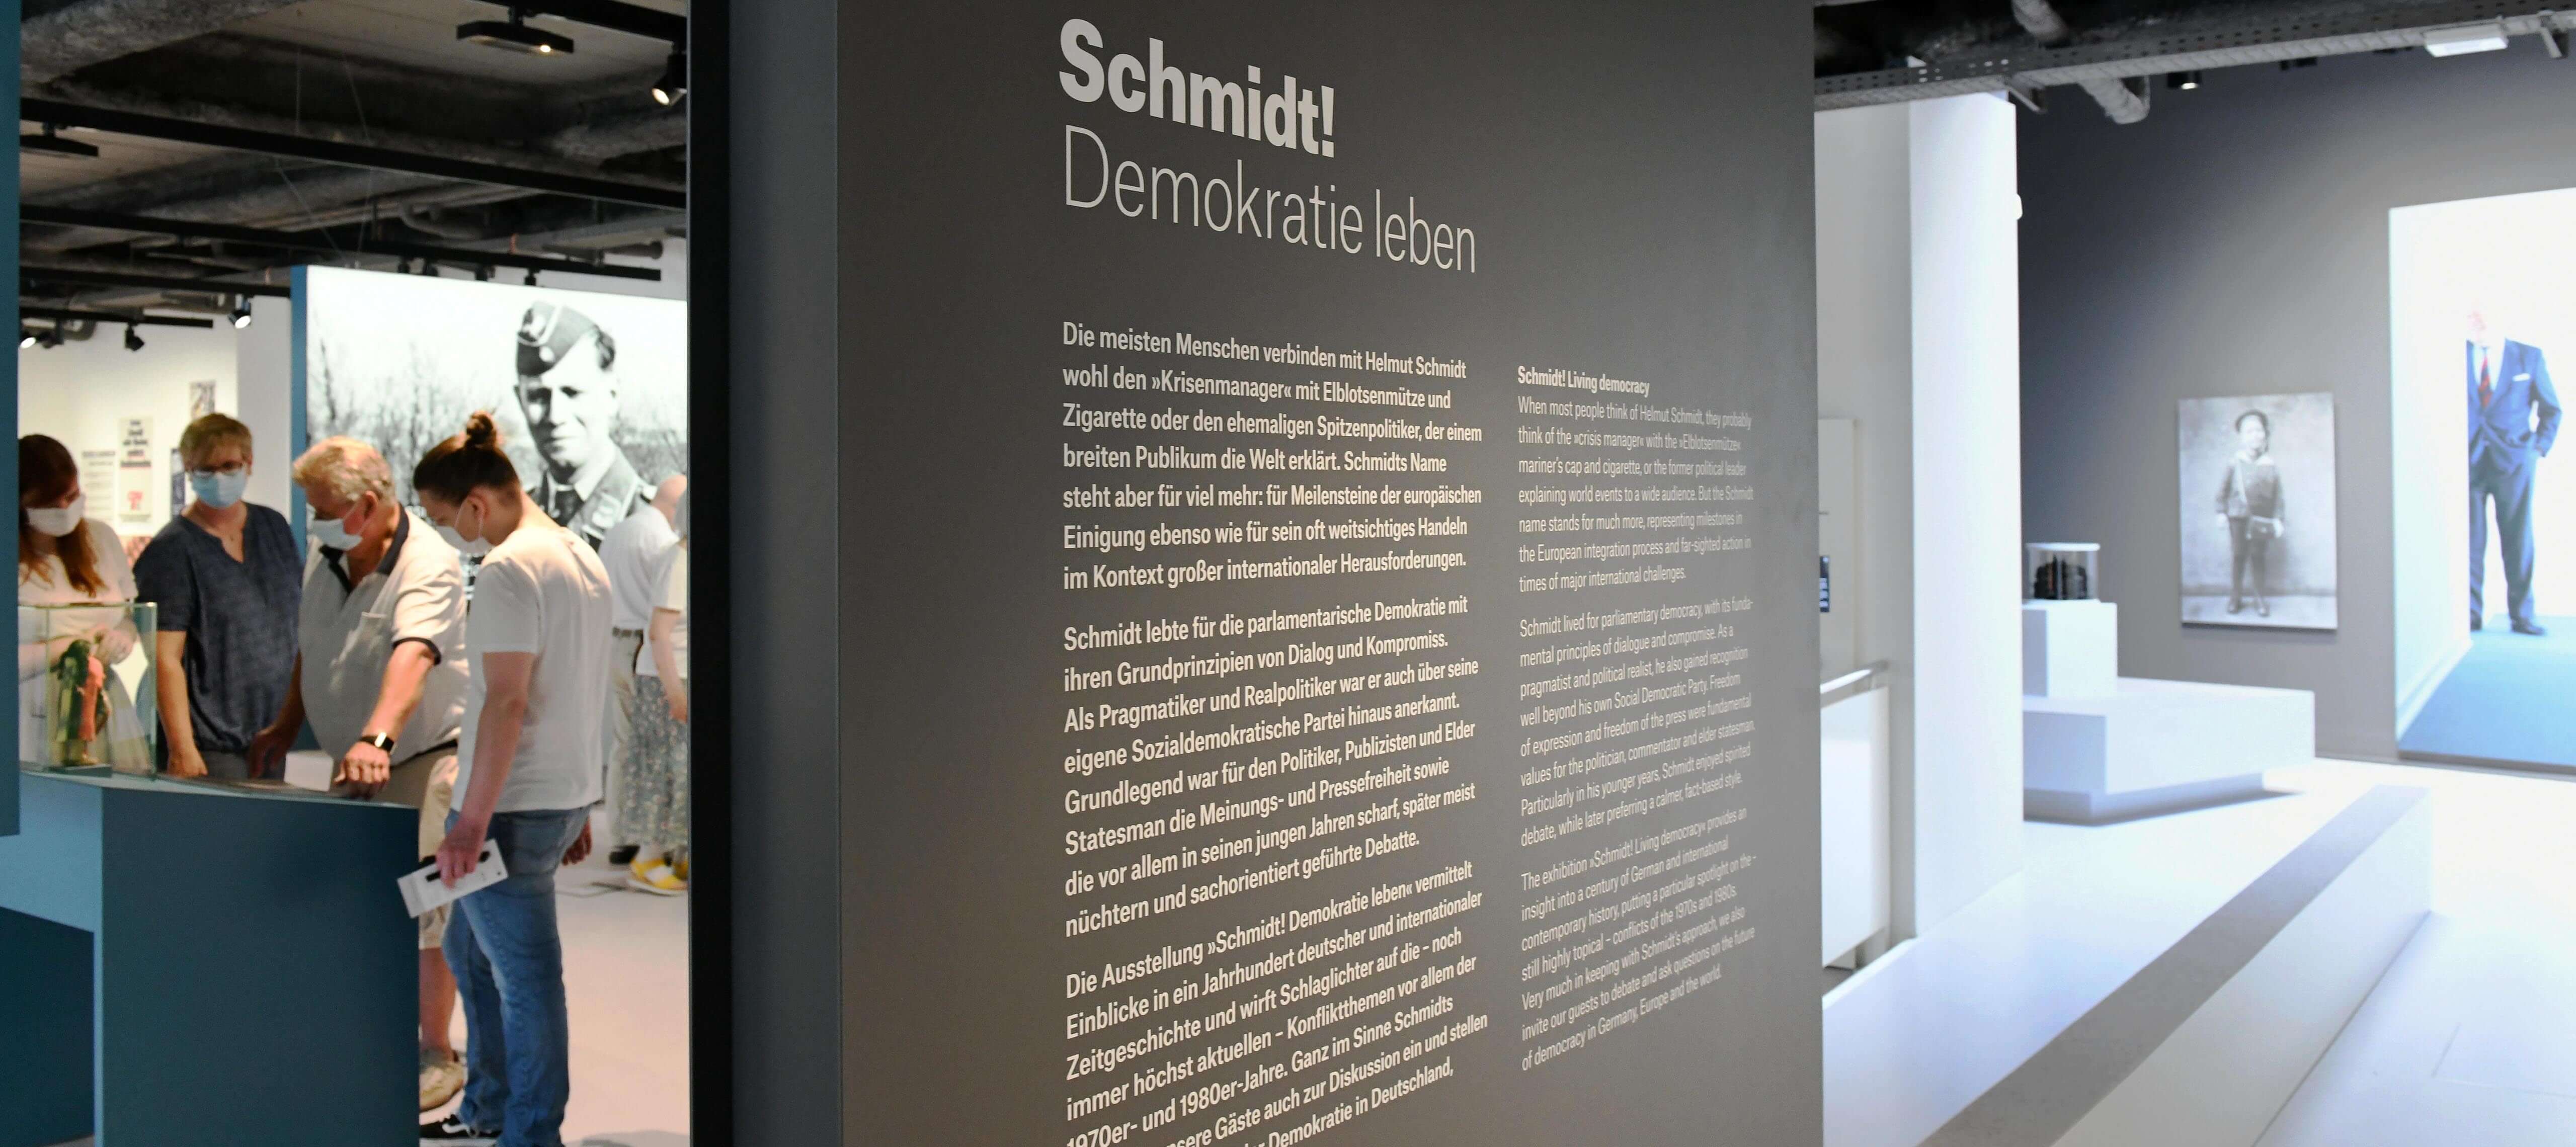 Blick auf die einleitende Textwand am Anfang des Ausstellungsrundweg.